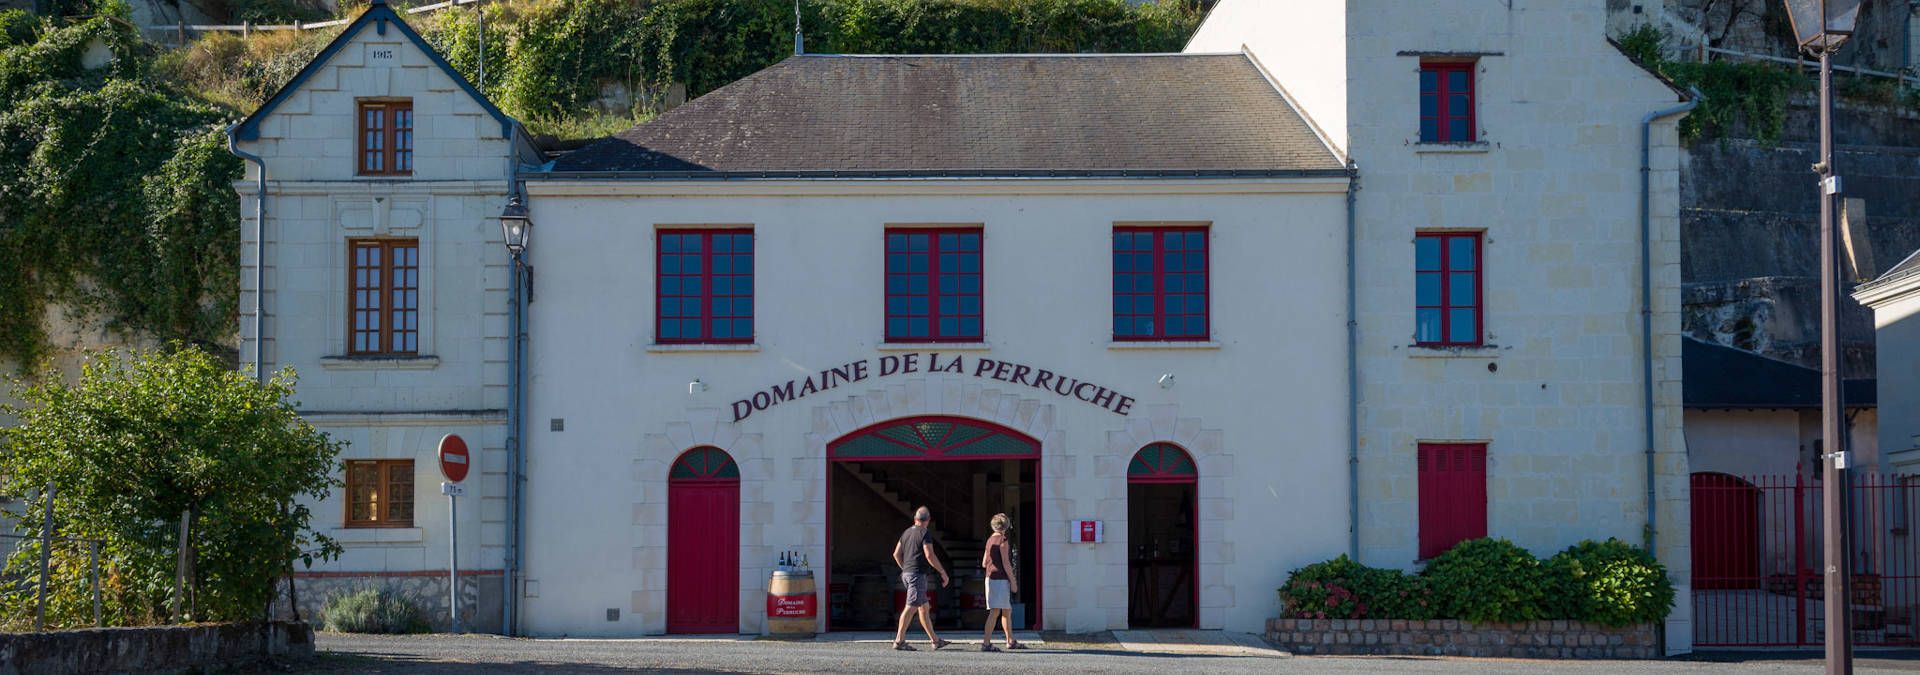 Domaine de la Perruche - Check winery's tour availabilities